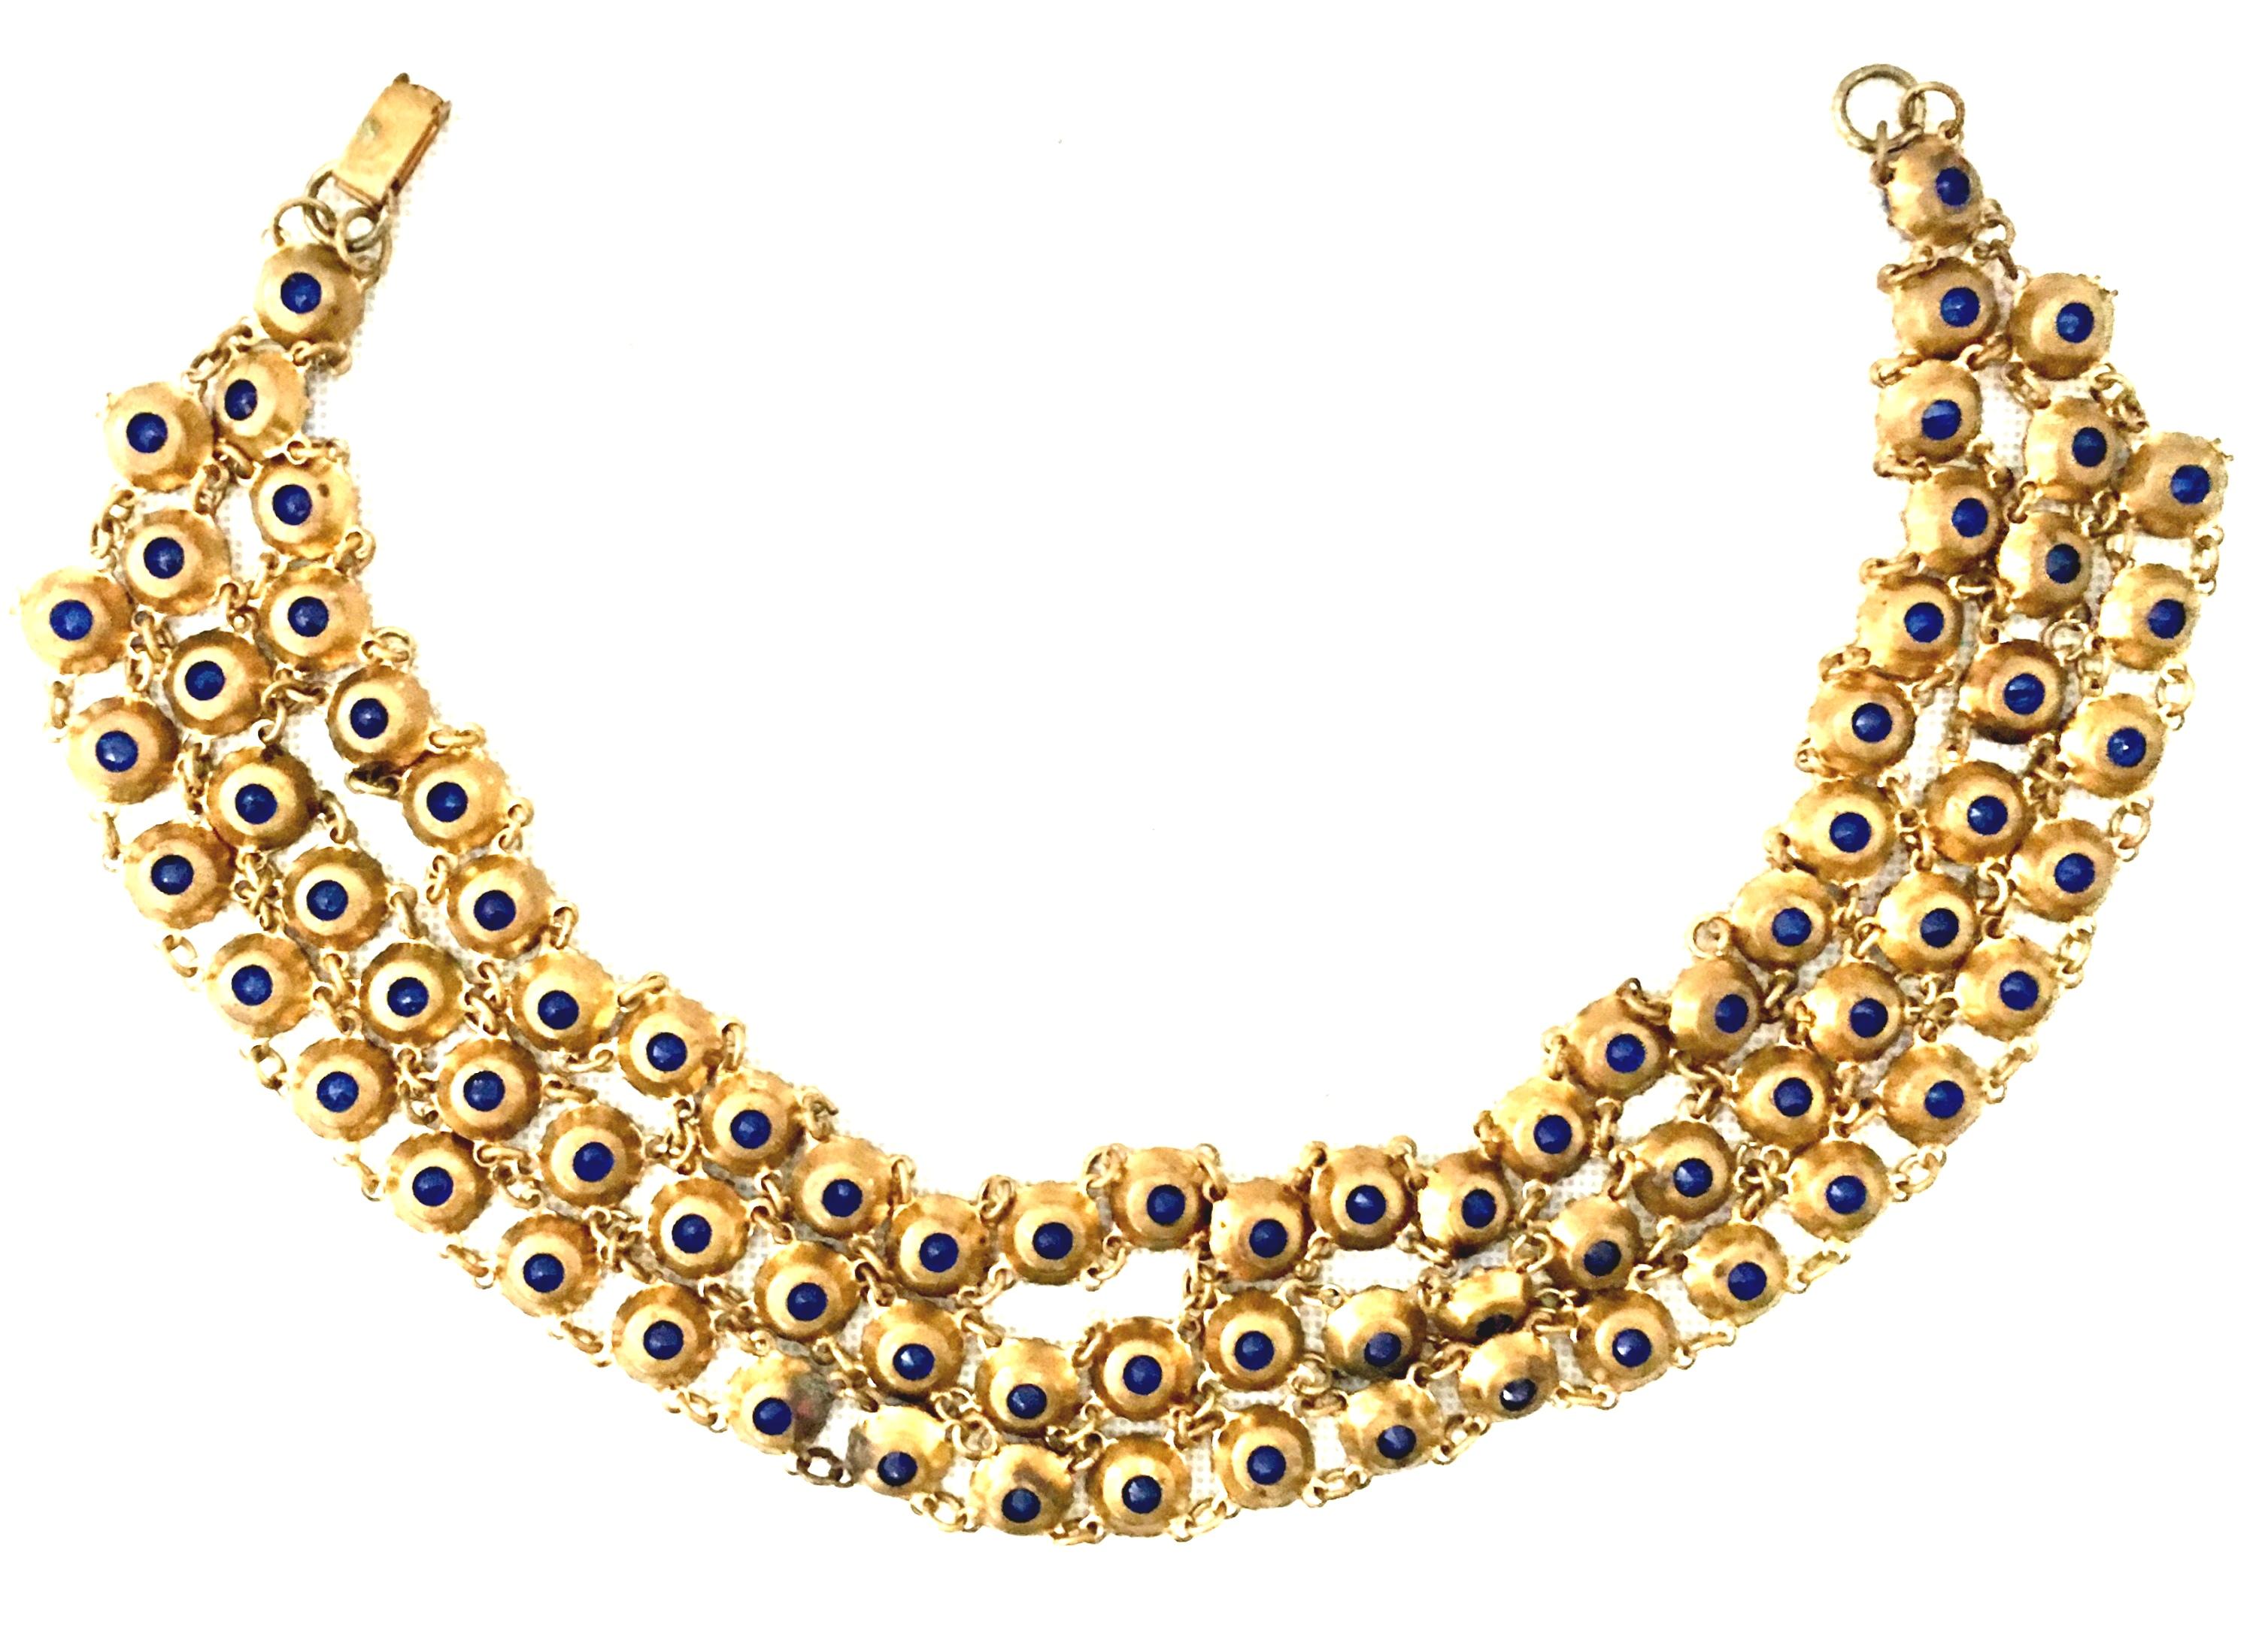 Antique Gilt Gold Sapphire Blue Faceted Glass Choker Necklace & Bracelet S/2 For Sale 9